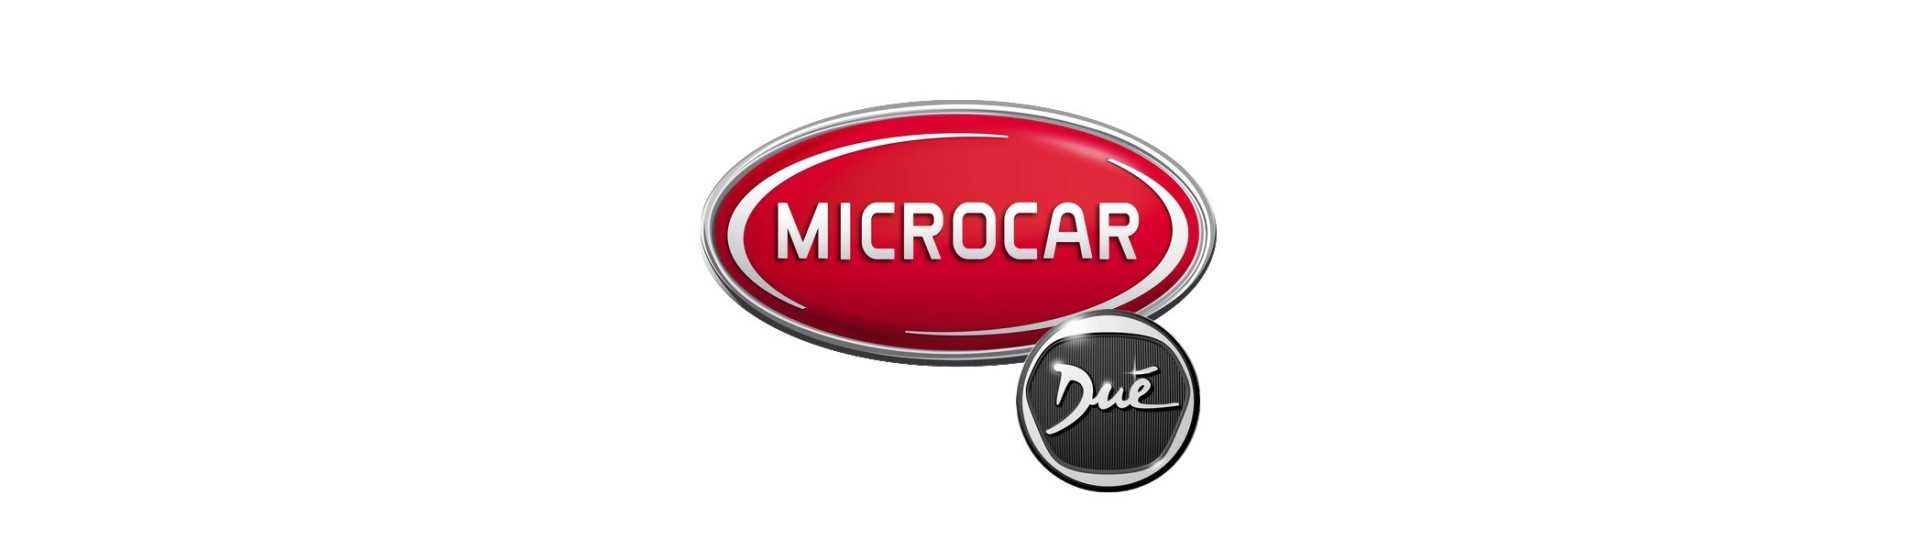 Carnet d'entretien au meilleur prix voiture sans permis Microcar Dué